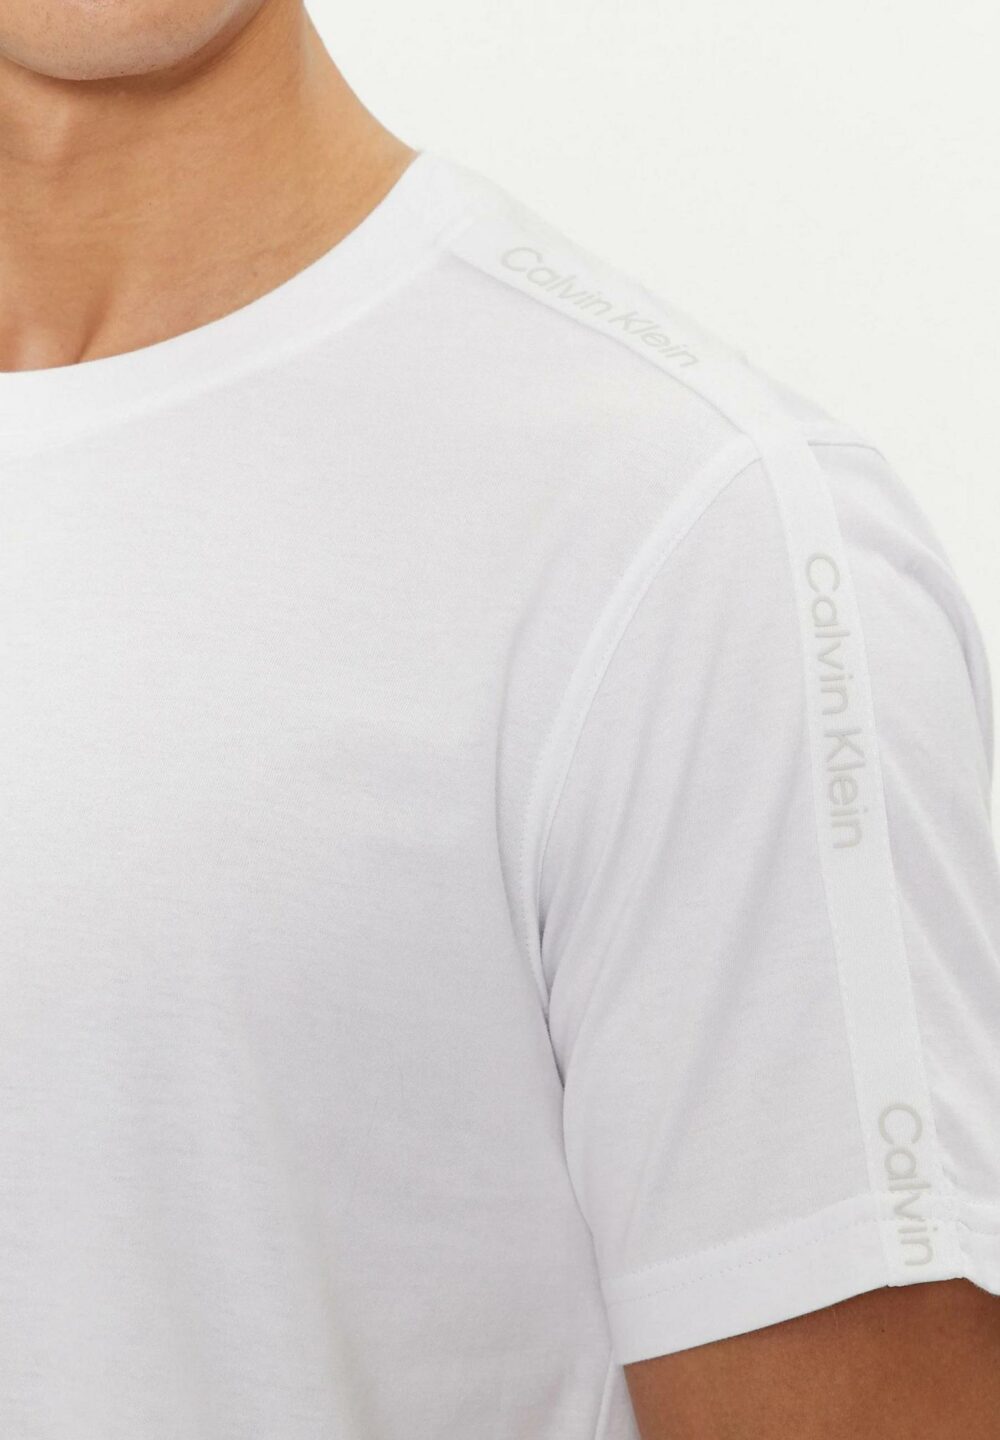 T-shirt Calvin Klein Sport PW - SS Bianco - Foto 4